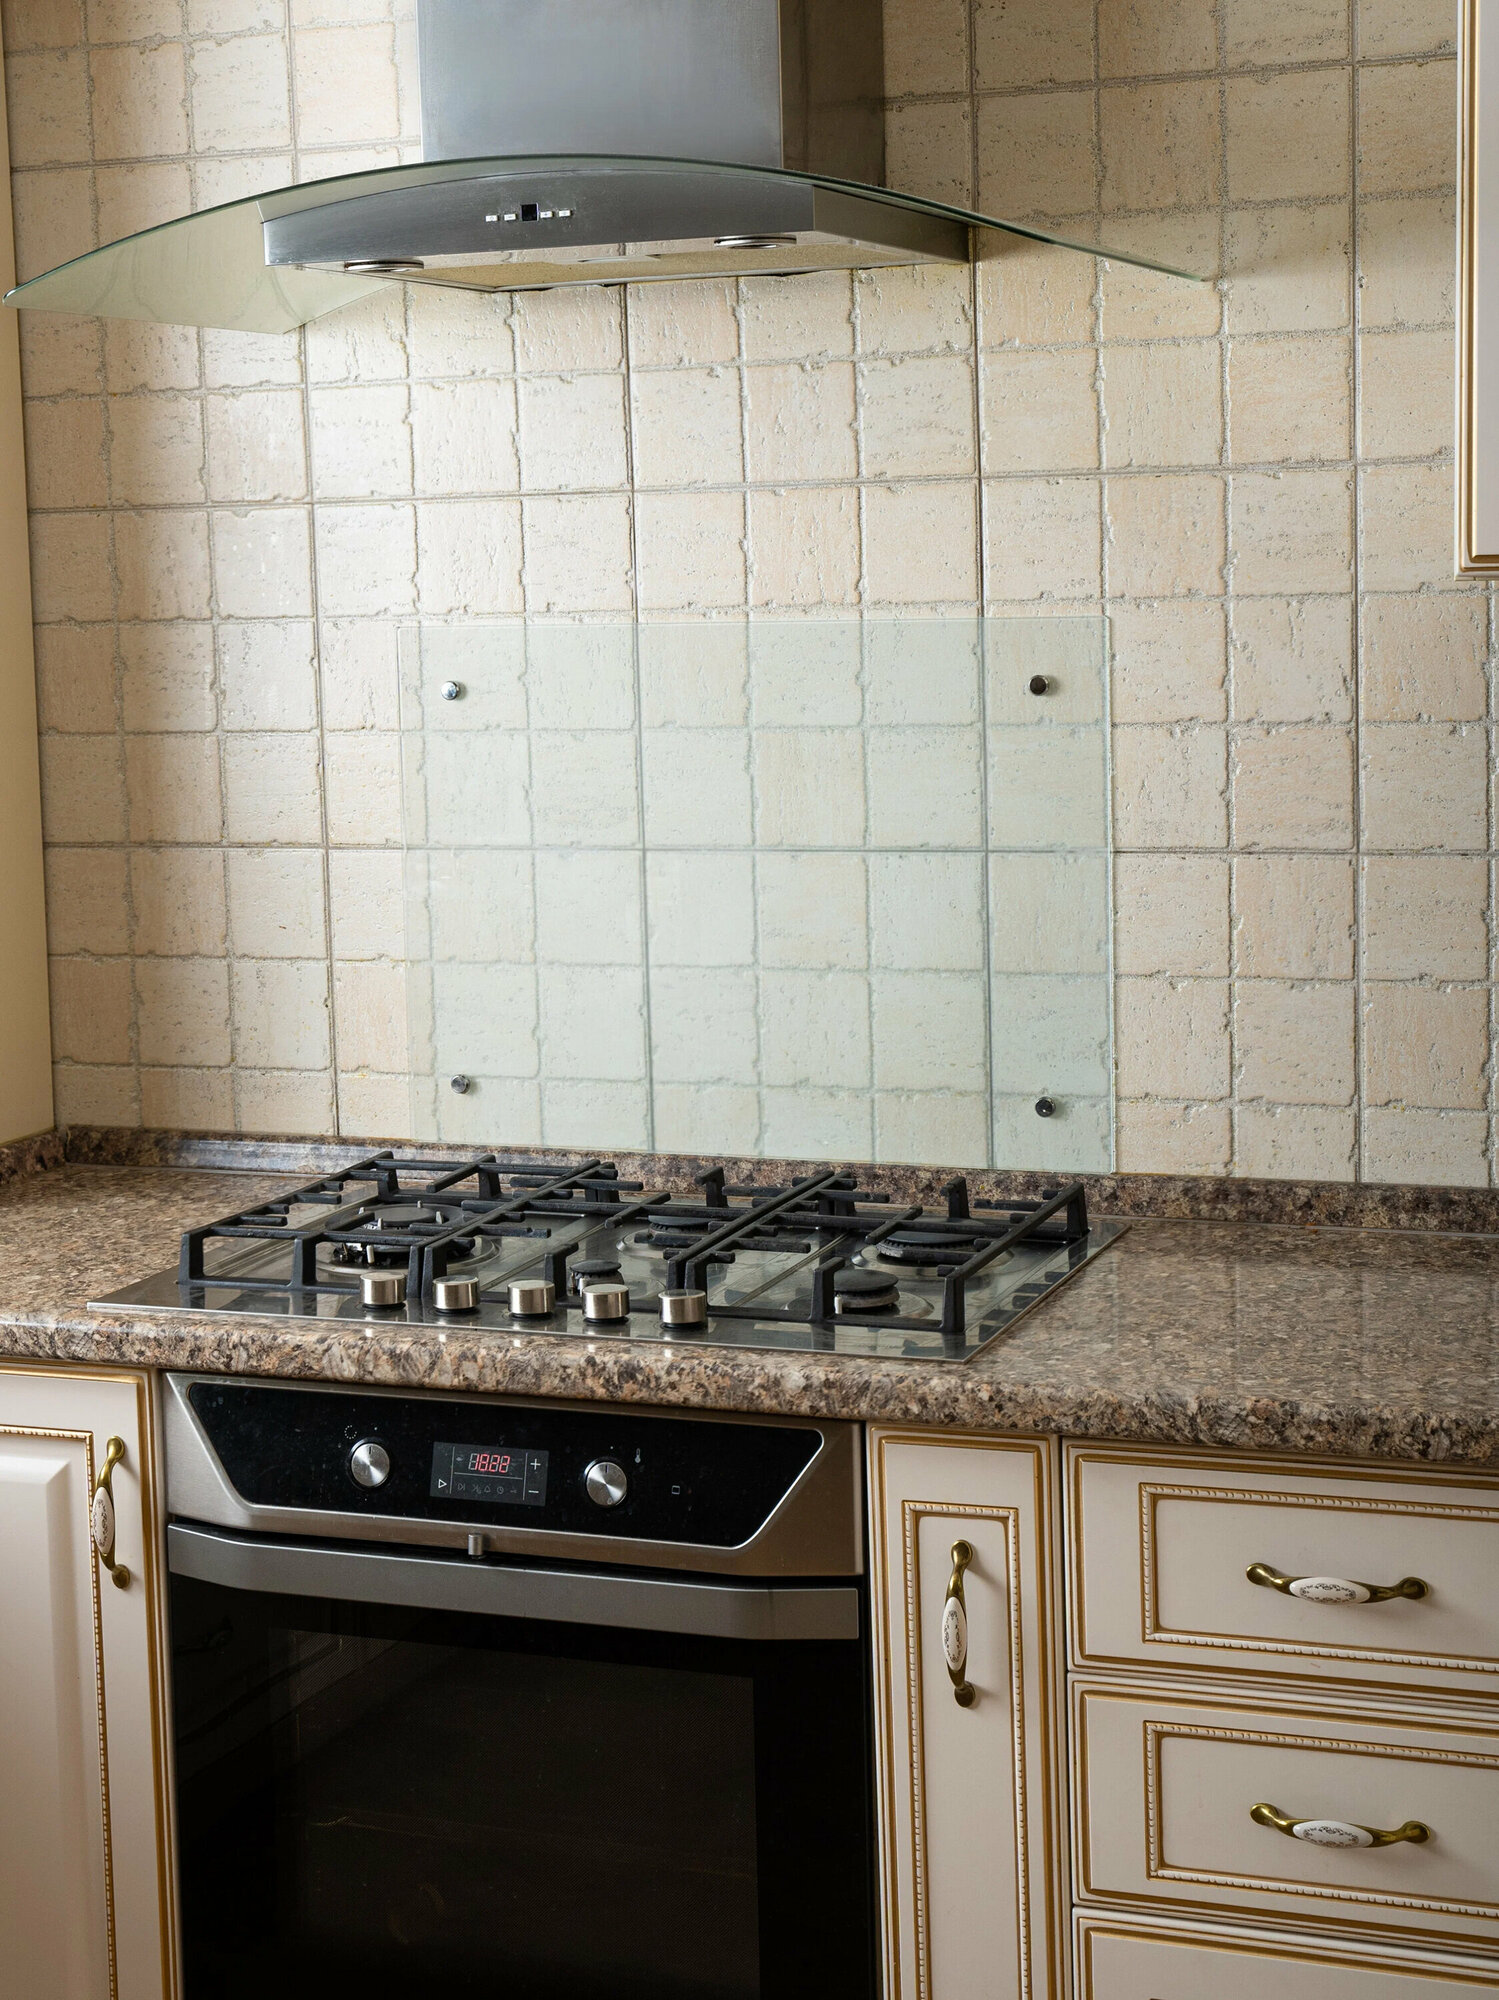 Защитный экран Normand из закаленного стекла 4 мм на кухню, фартук от брызг для плиты; 800х500 мм, матовый белый